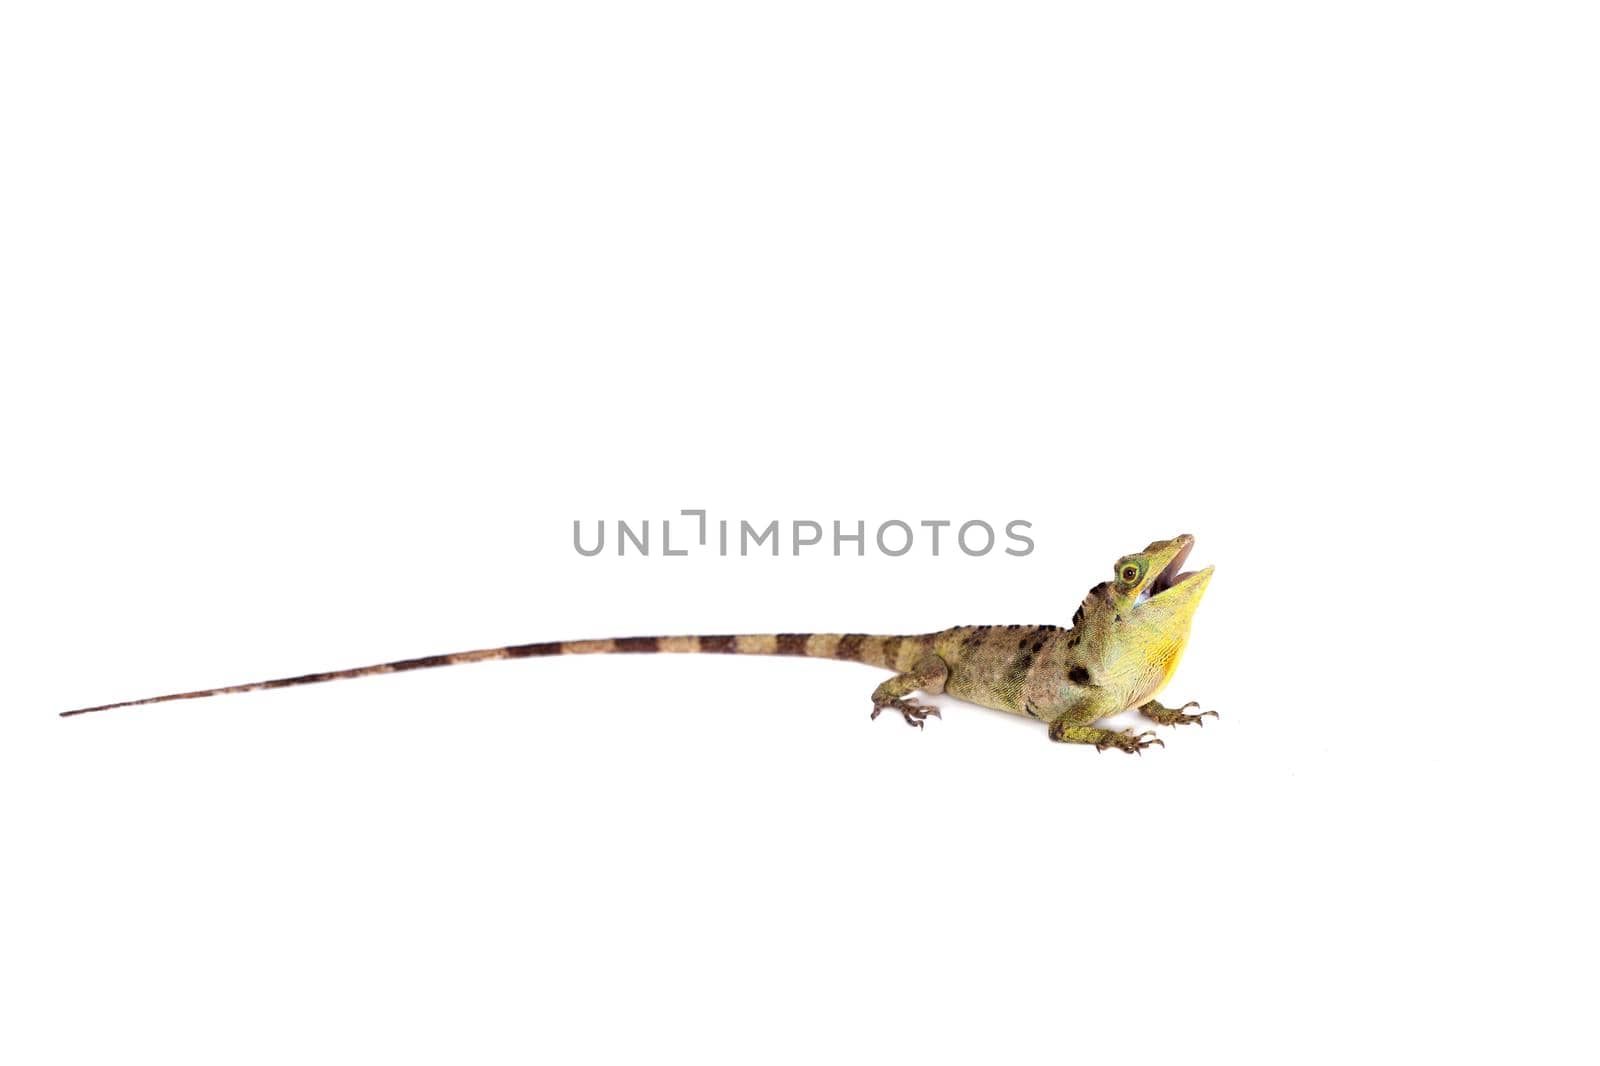 Dactyloa fraseri lizard isolated on white background